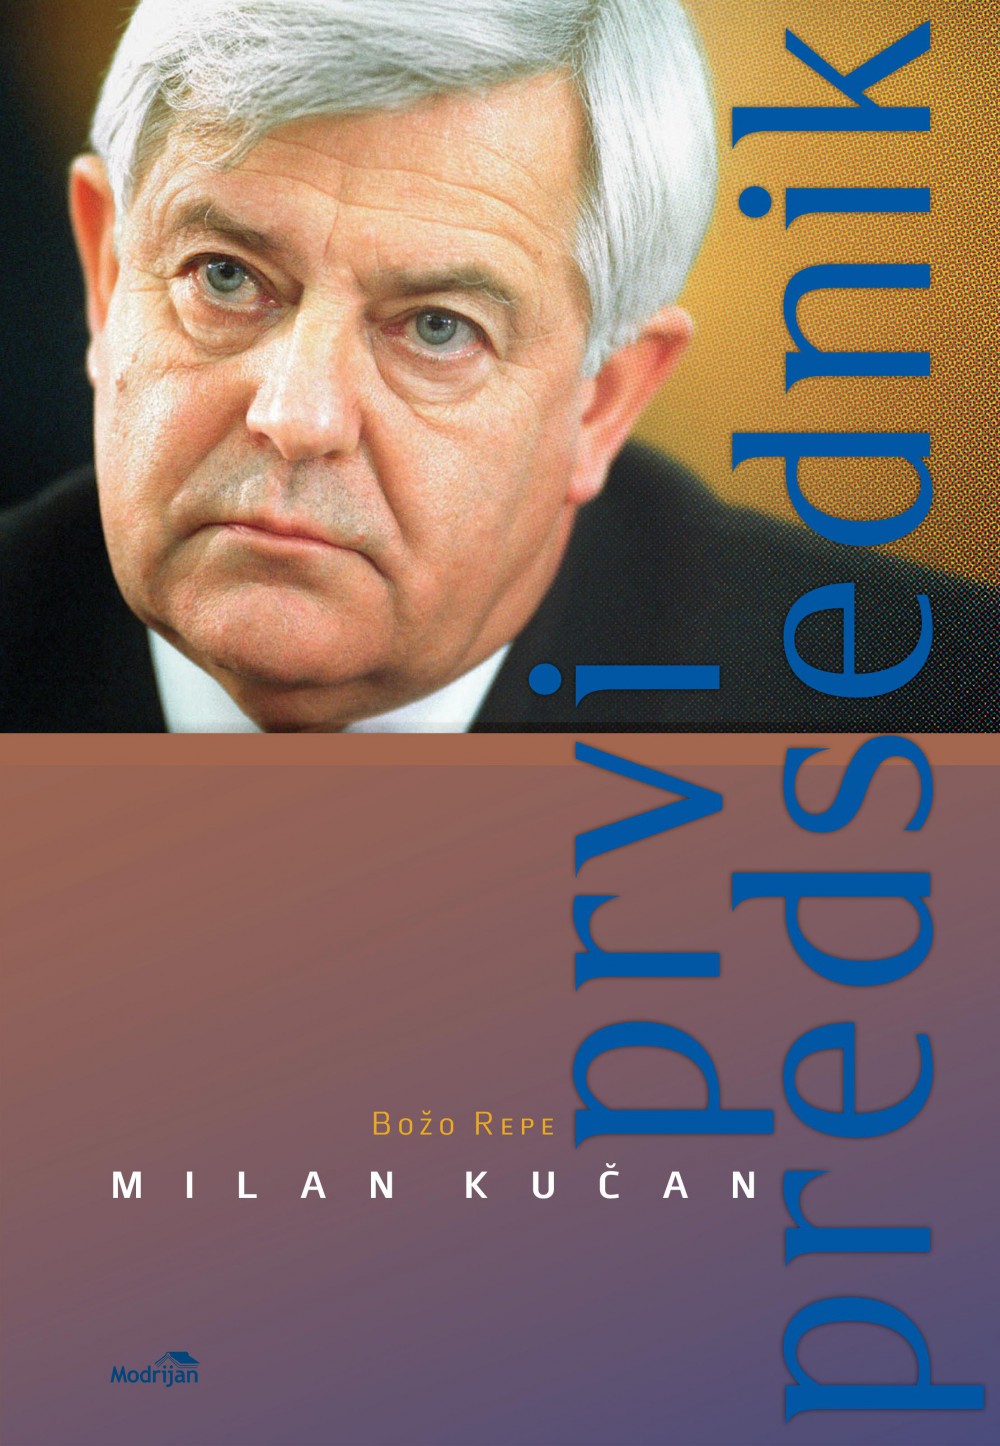 Predstavitev knjige Prvi predsednik - Milan Kučan